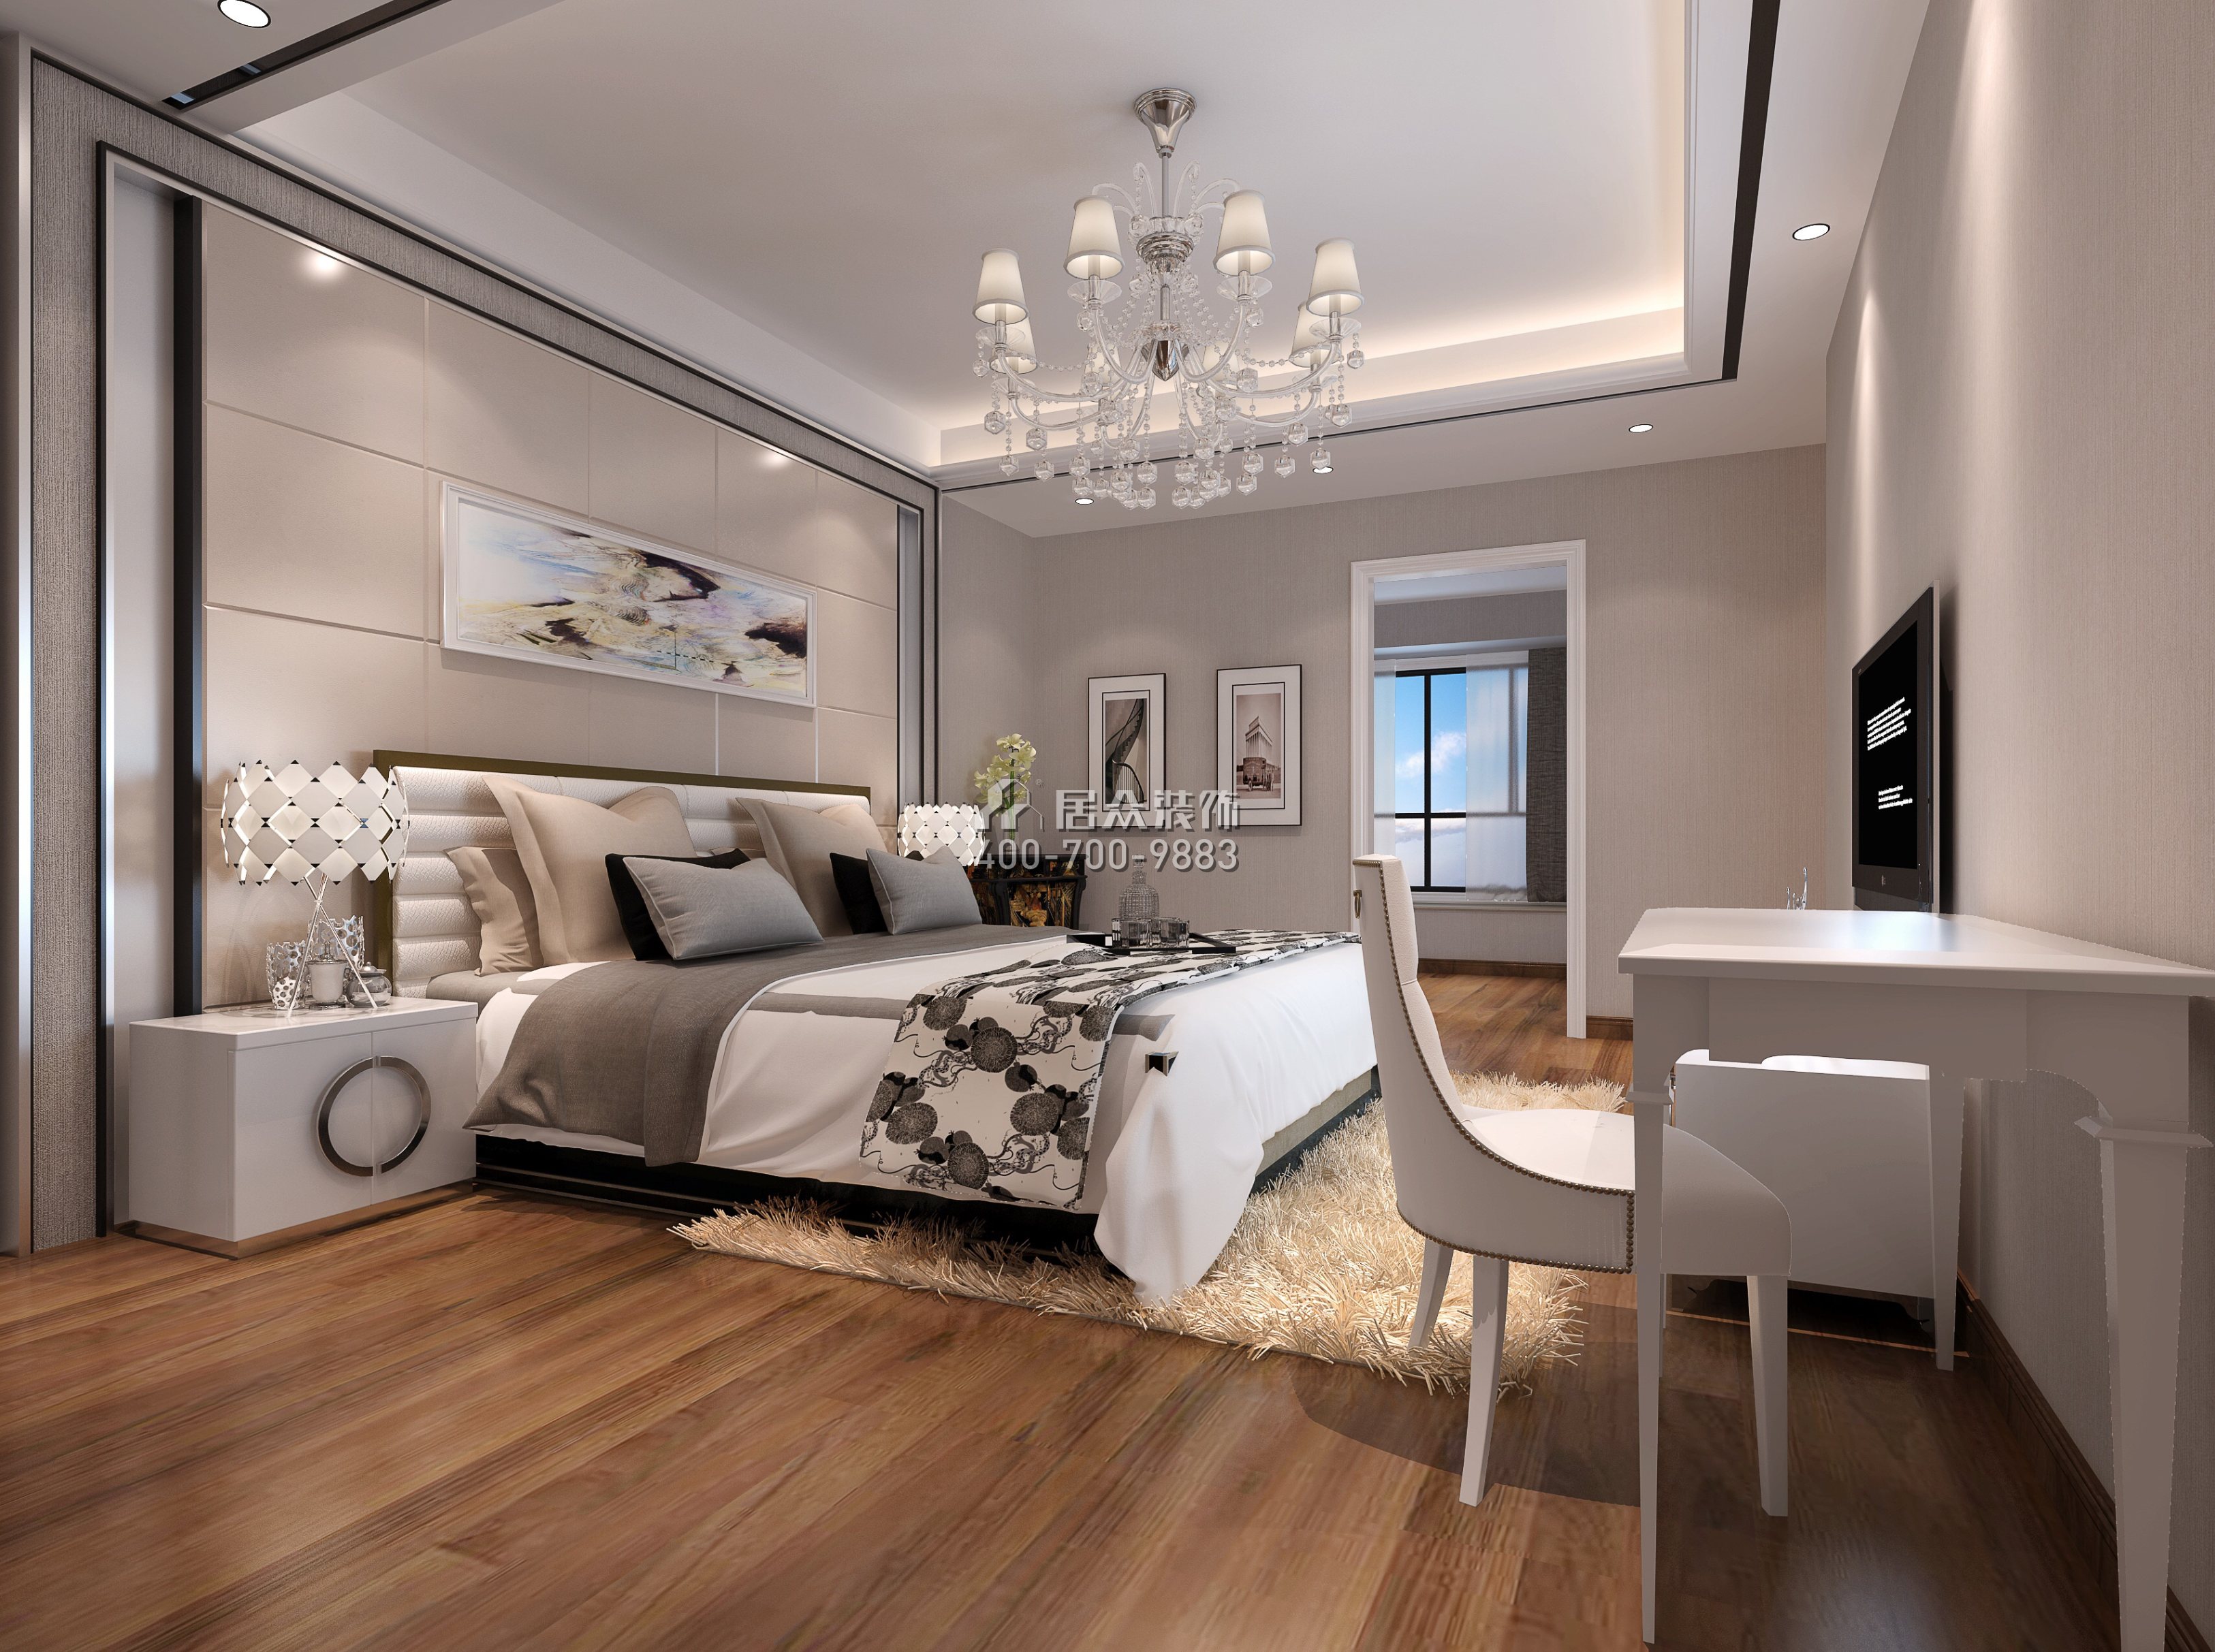 星河丹堤158平方米现代简约风格平层户型卧室装修效果图